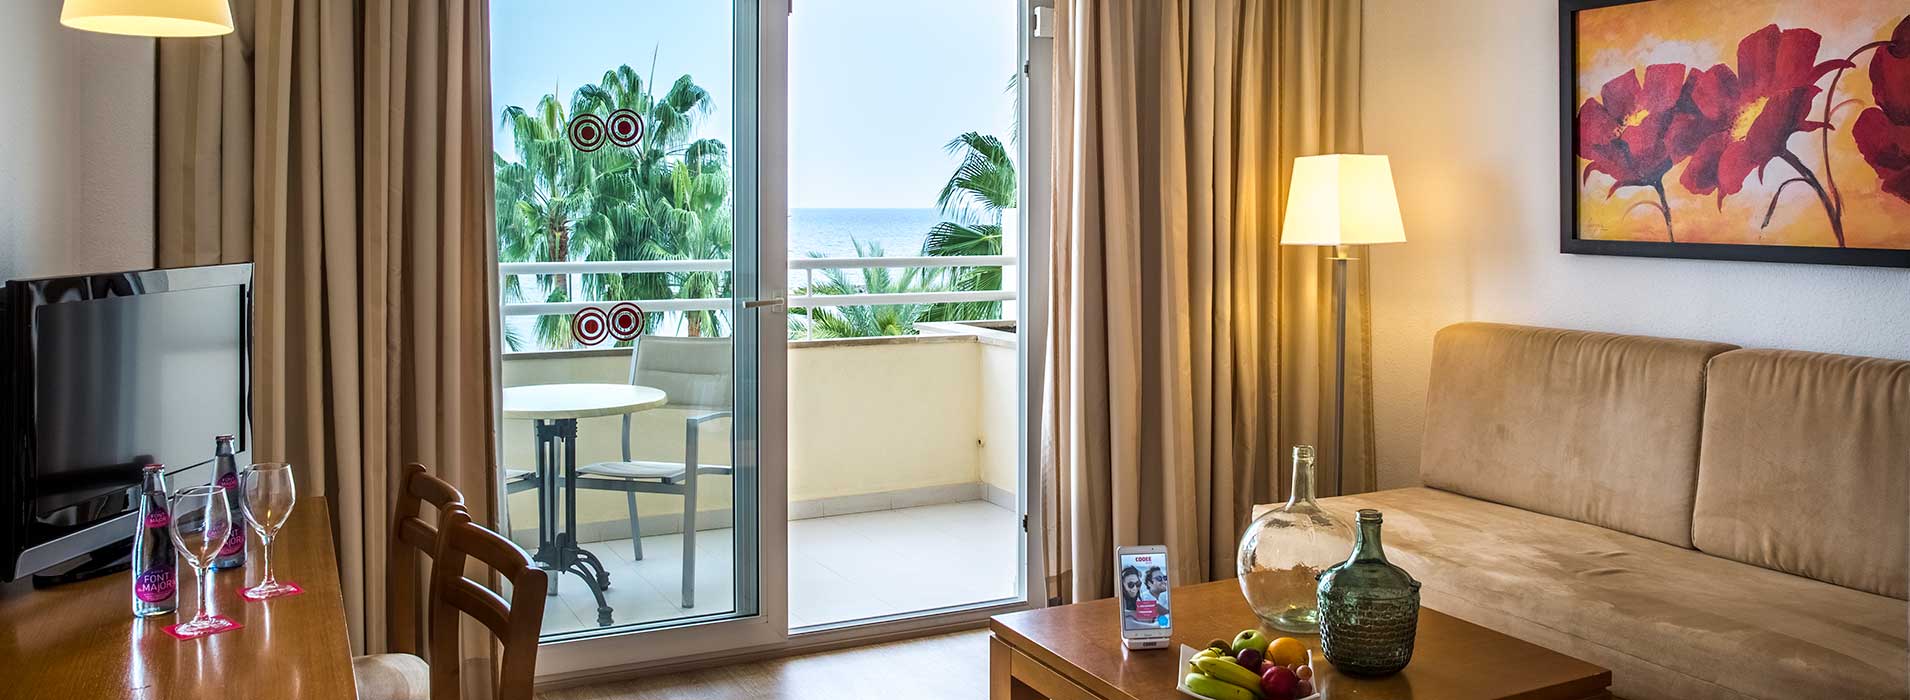 header suites aparthotel cap de mar